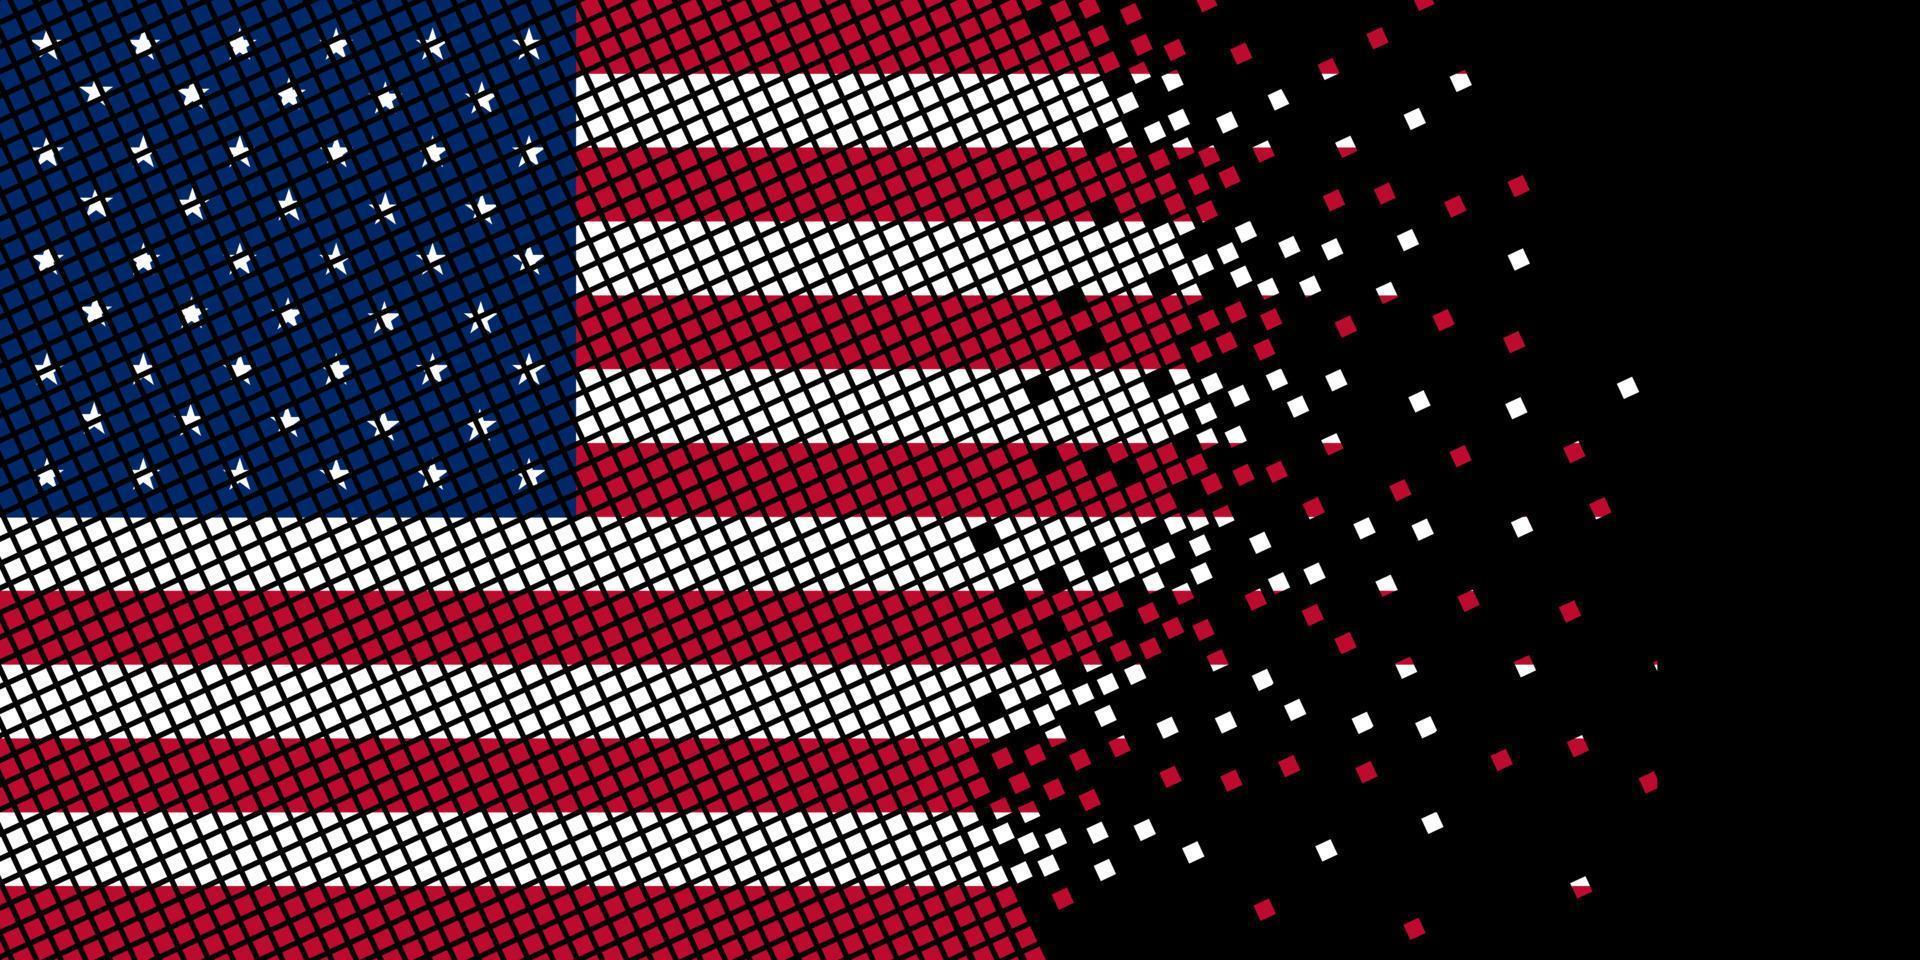 Pixelkunst mit usa-Flagge. Pixelpunkte wachsen, indem sie sich innerhalb des Flags konzentrieren. die punkte innerhalb der amerikanischen flagge sind pixelkunst, die einheit und unabhängigkeit darstellt. Flagge auf schwarzem Hintergrund. vektor